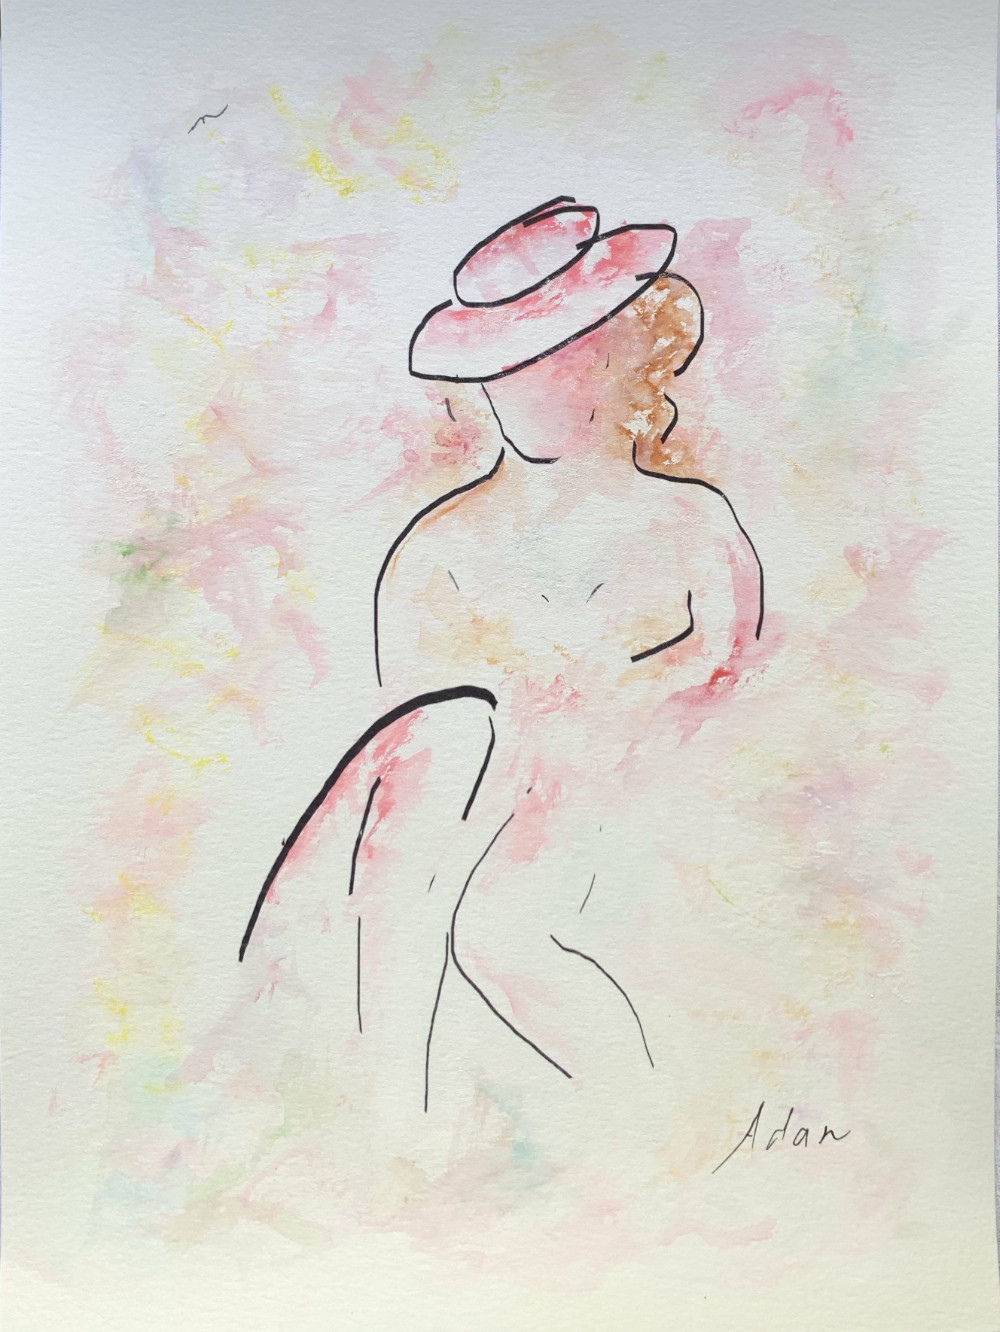 Summer is a Lady ©Felipe Adan Lerma circa July 2021 - watercolor on paper with line art https://felipeadan-lerma.pixels.com/featured/summer-is-a-lady-felipe-adan-lerma.html